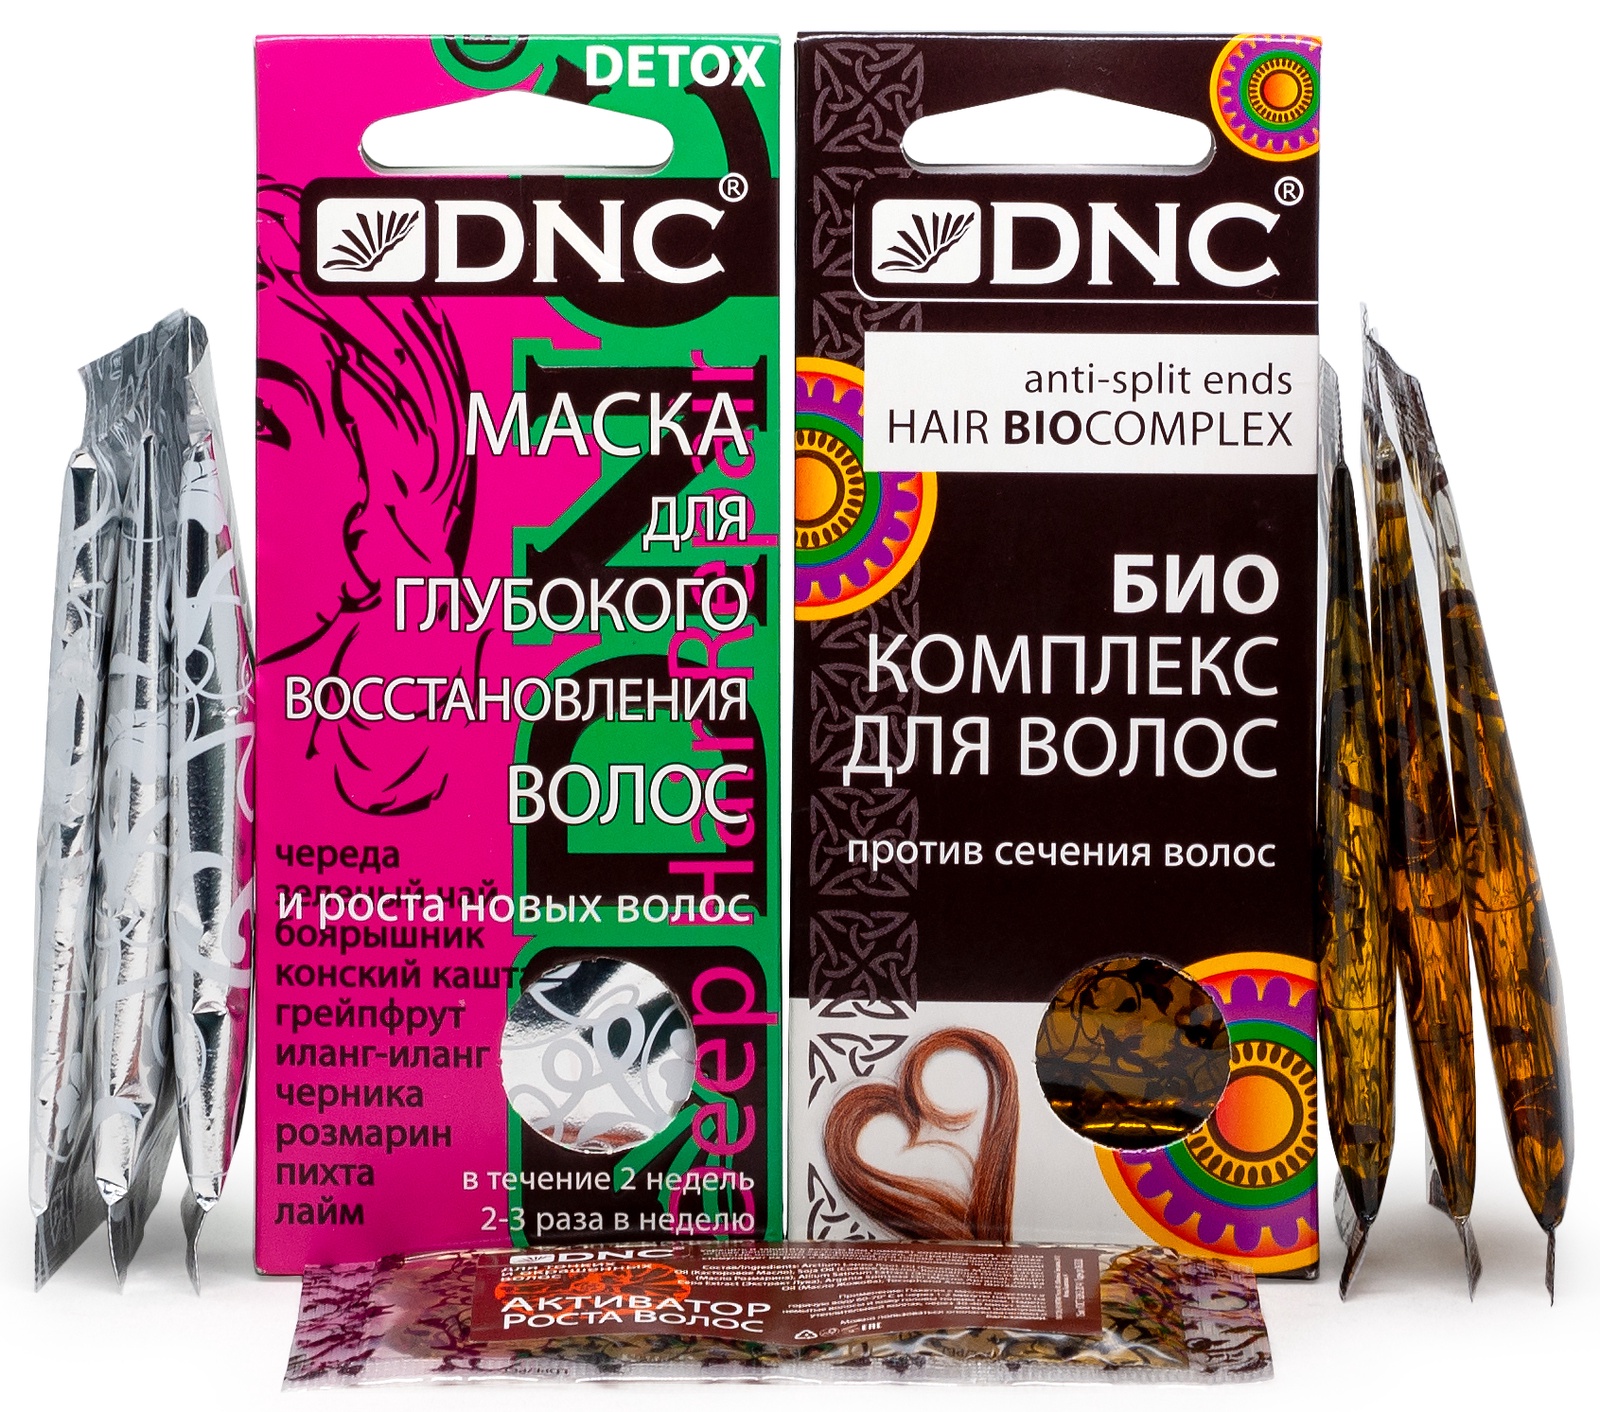 Биокомплекс для волос DNC против сечения волос. DNC маска для роста волос. Против сечения. Питание против сечения волос. Против сечения волос